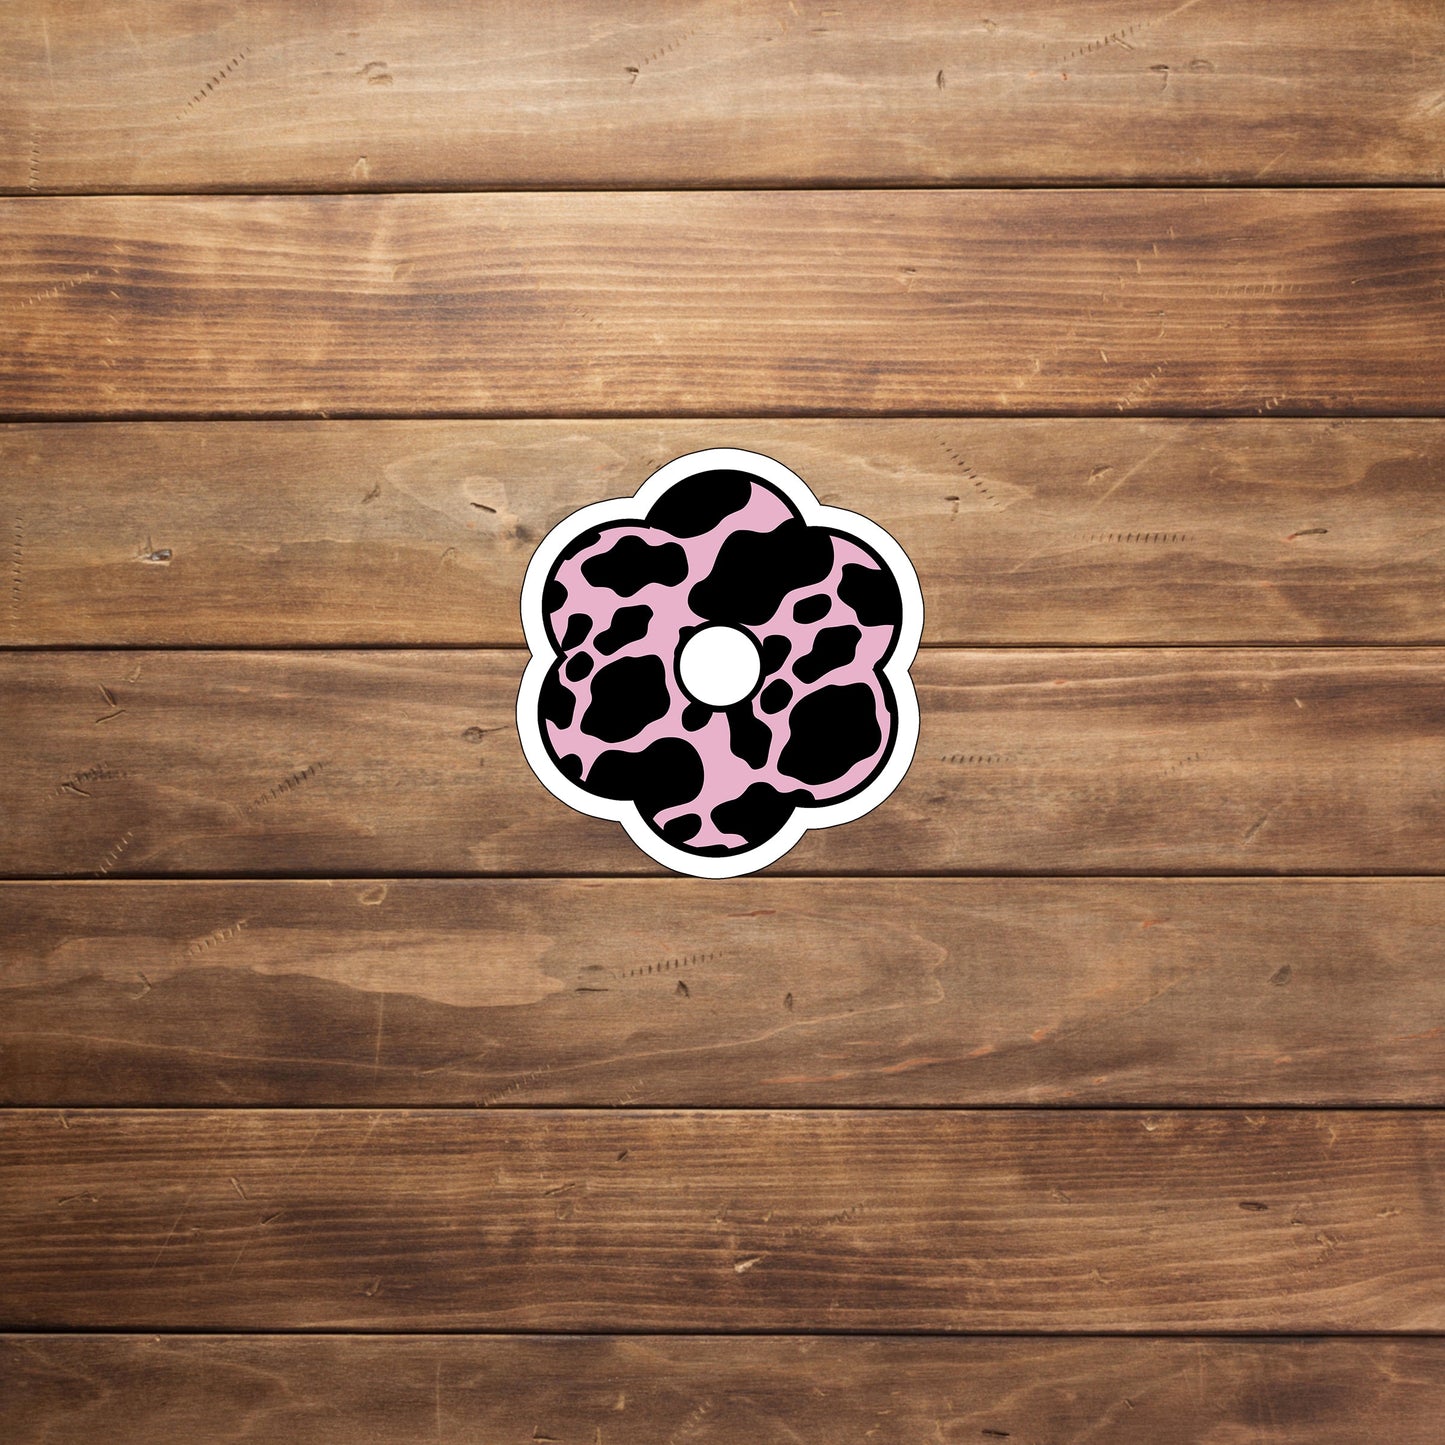 pinkblack  Sticker,  Vinyl sticker, laptop sticker, Tablet sticker